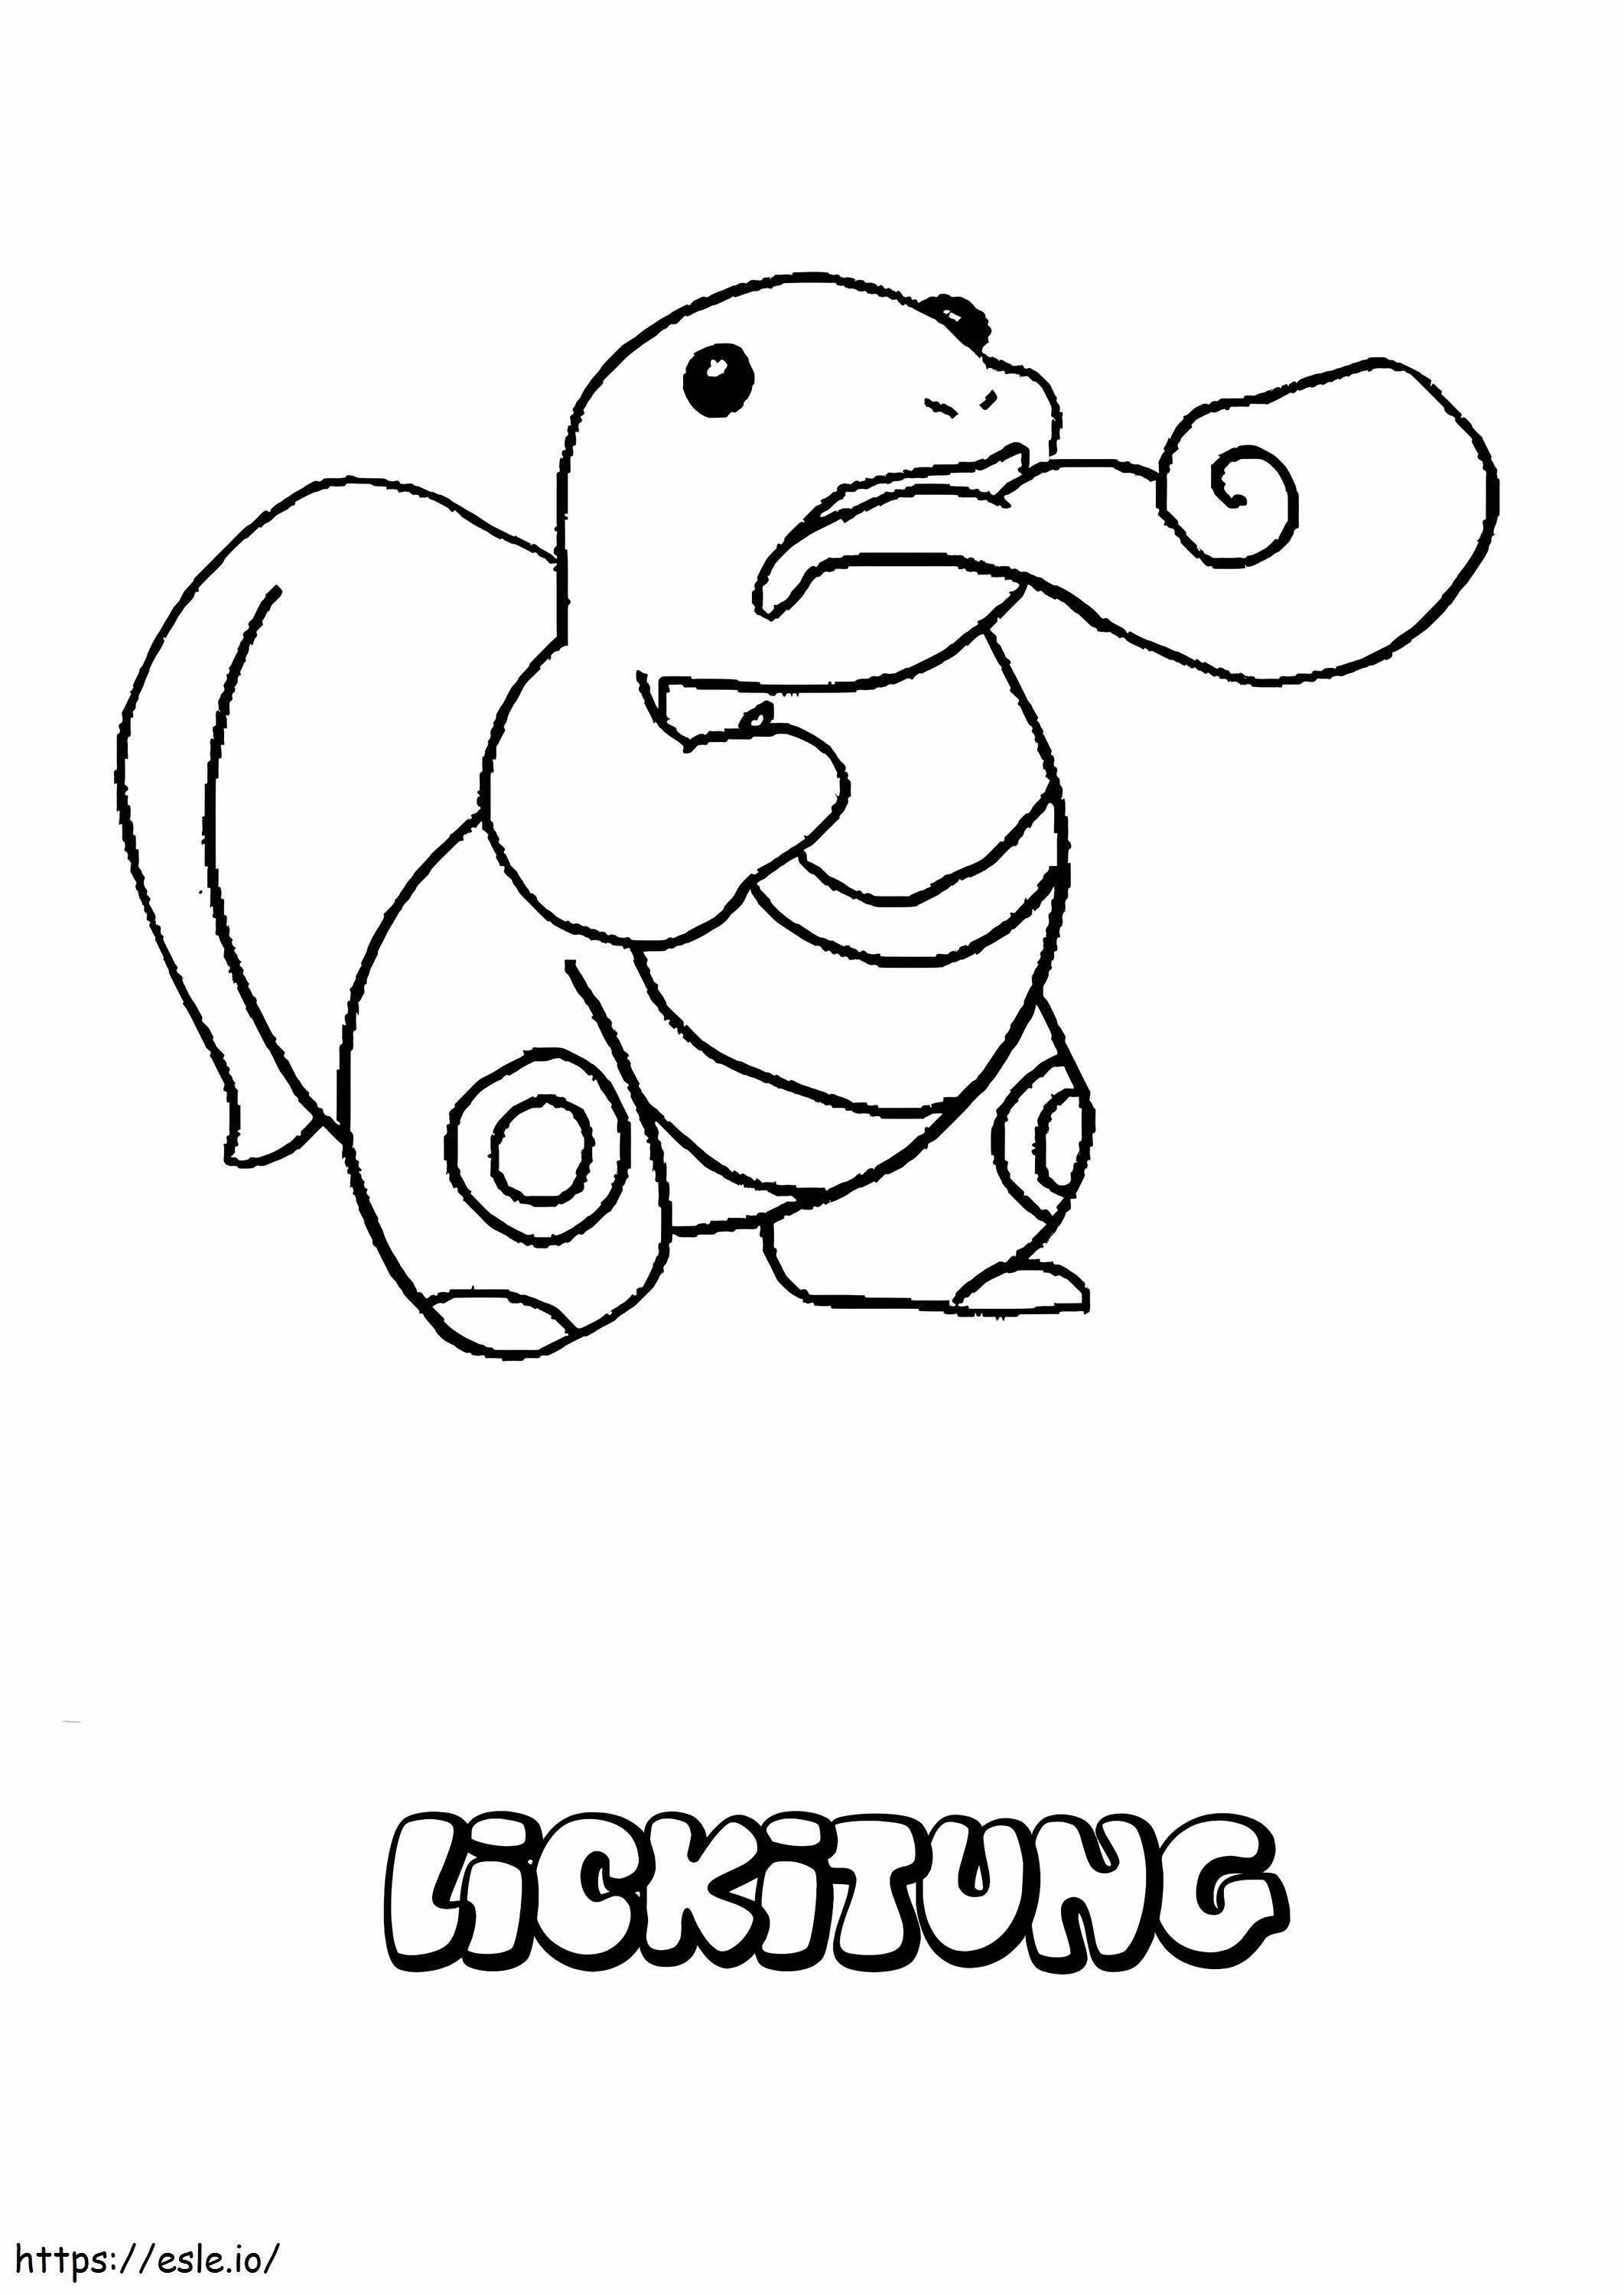 Coloriage Pokémon Lickitung Gen 1 à imprimer dessin